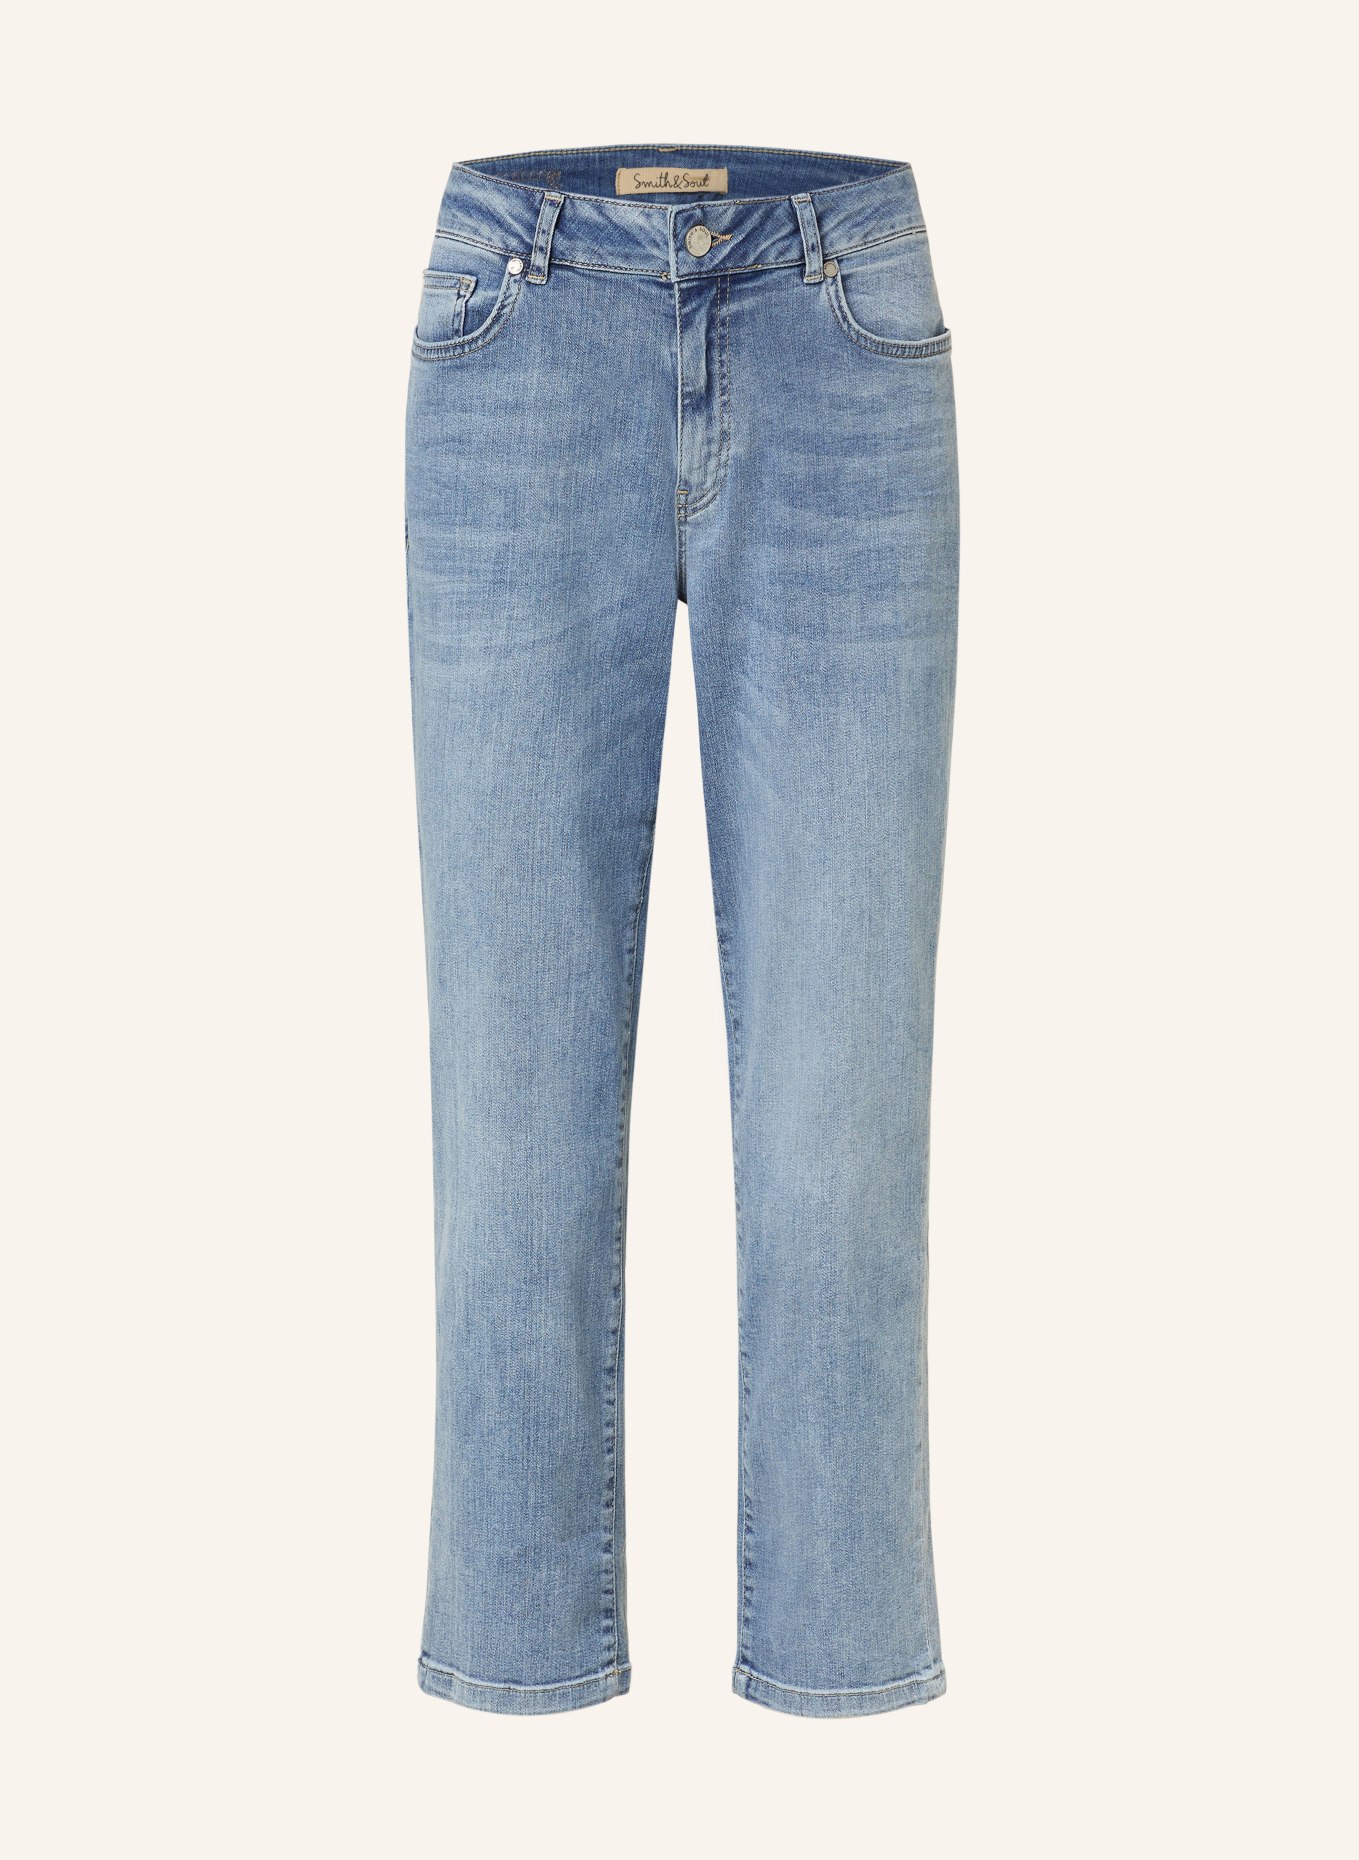 Smith & Soul 7/8 jeans, Color: 649 denim (Image 1)